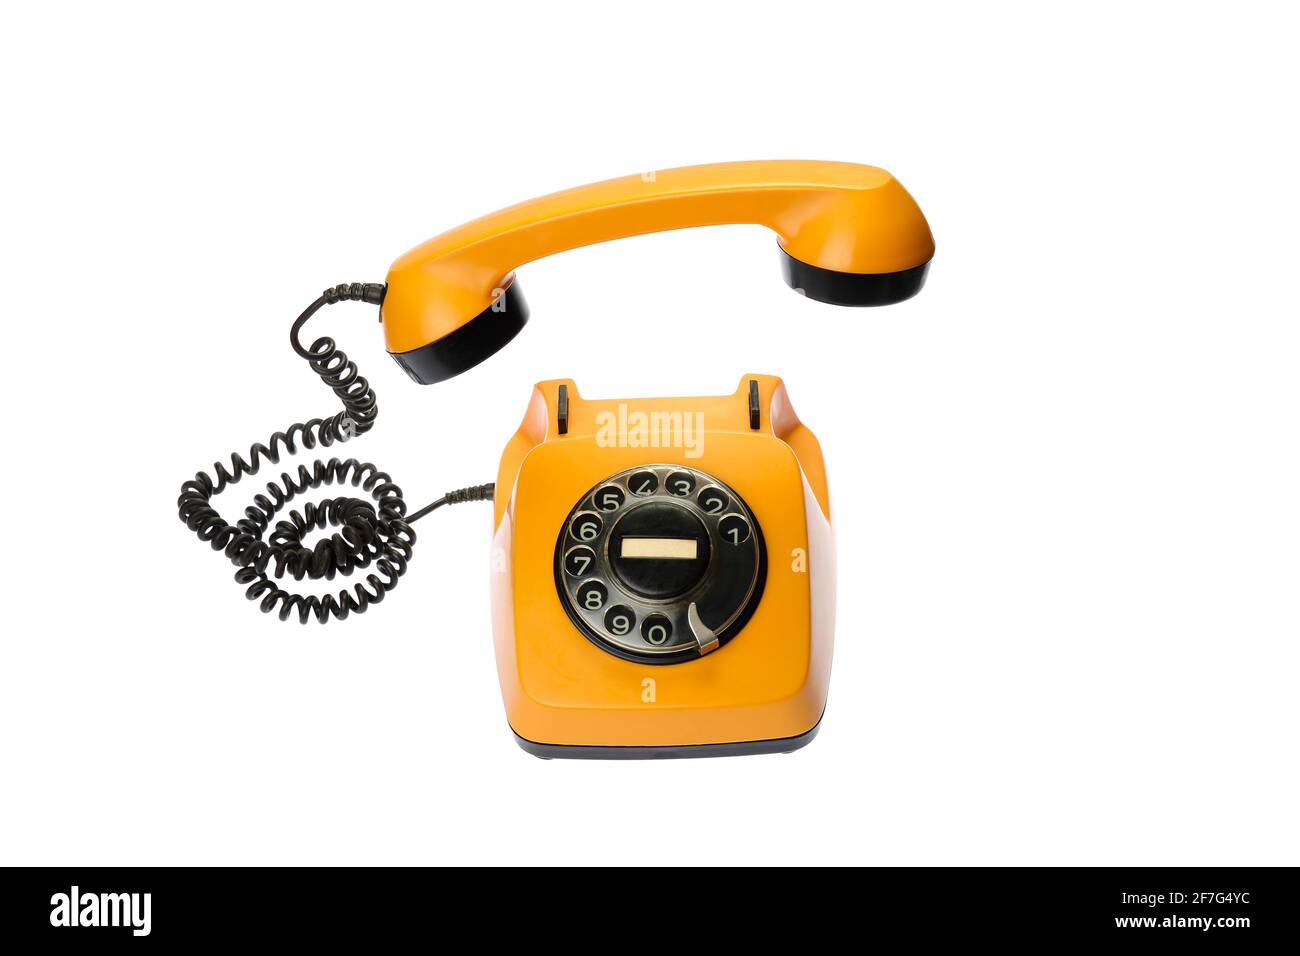 Vecchio telefono a manopola arancione con ricevitore sospeso, isolato su sfondo bianco Foto Stock